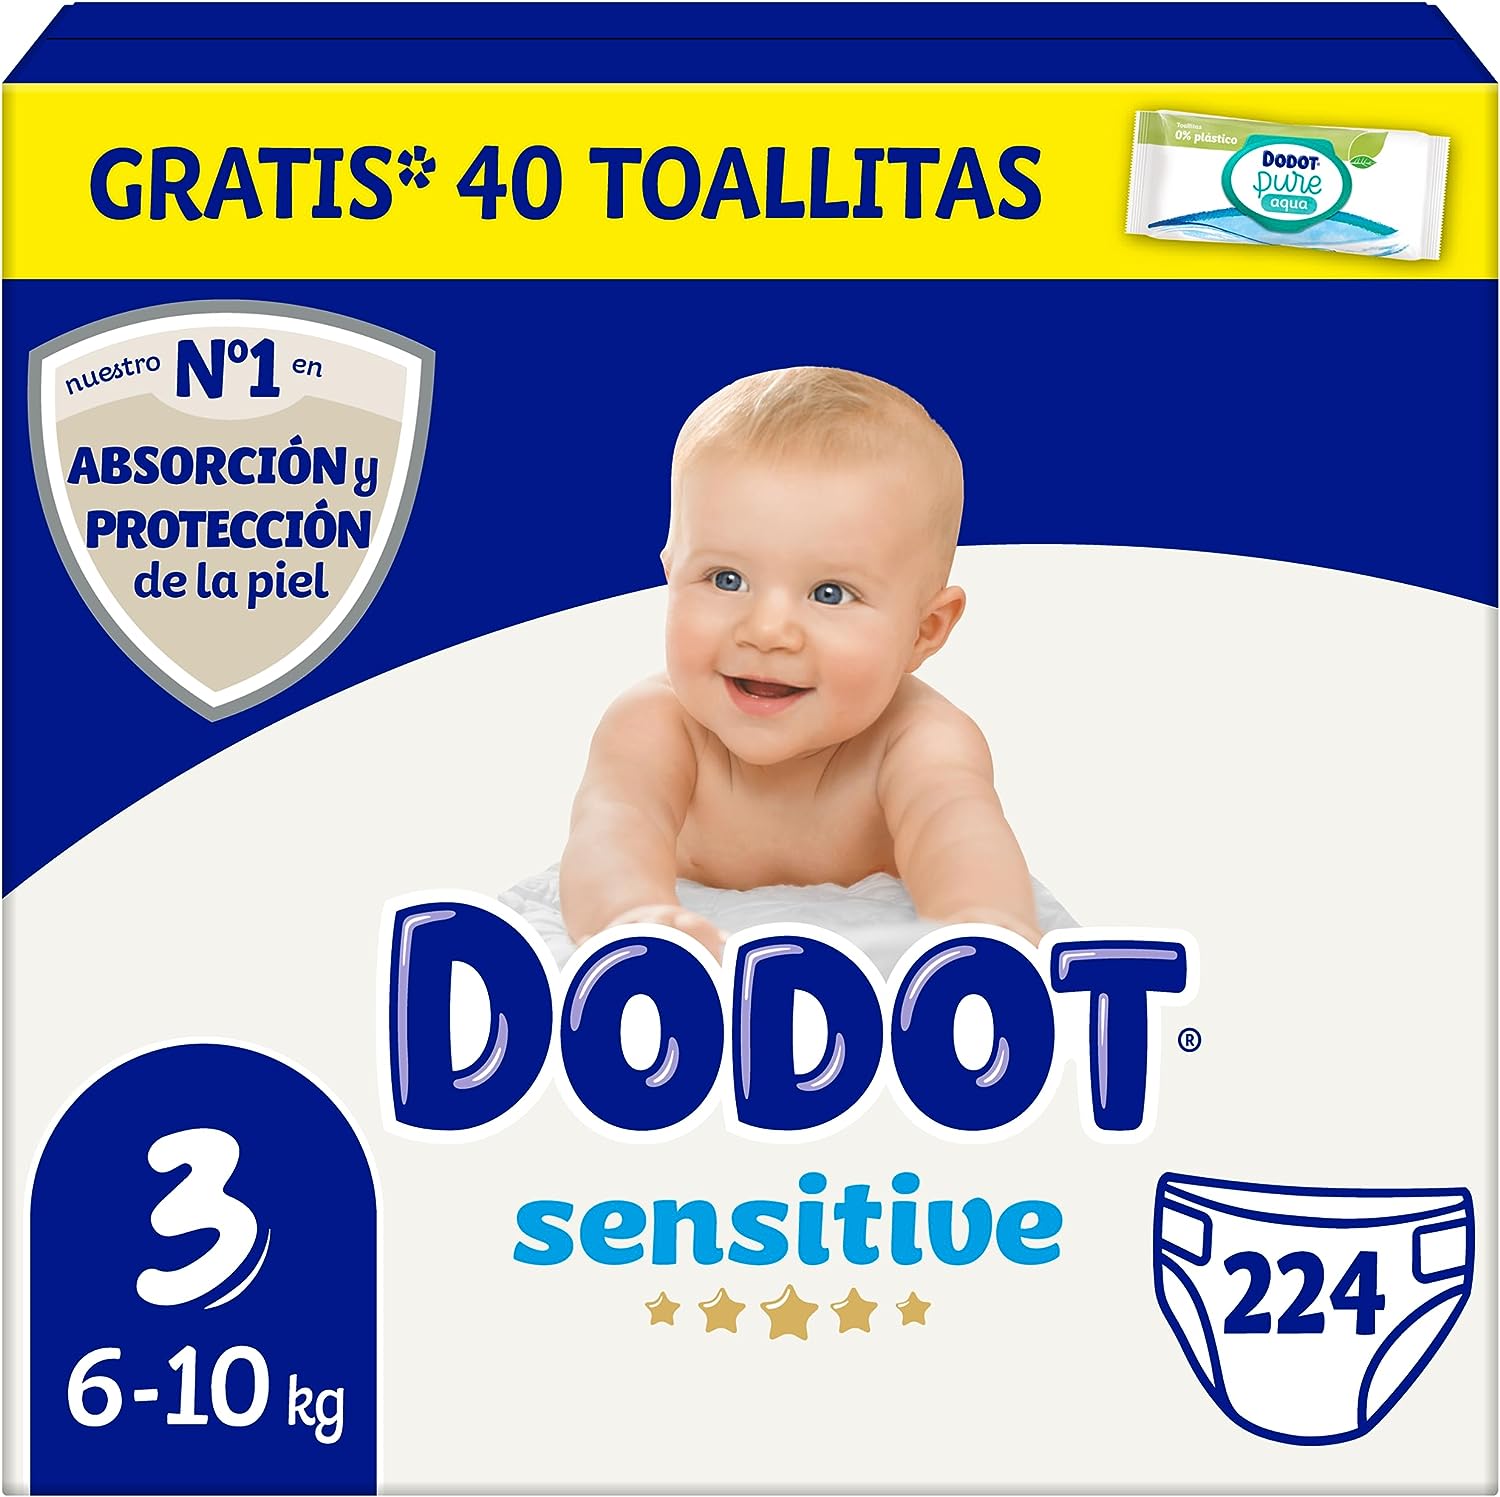 Dodot Pañales Bebé Sensitive Talla 3 (6-10 kg), 224 Pañales + 1 Pack de 40 Toallitas Gratis Cuidado Total Aqua, Óptima Protección de la Piel de Dodot, Pack...